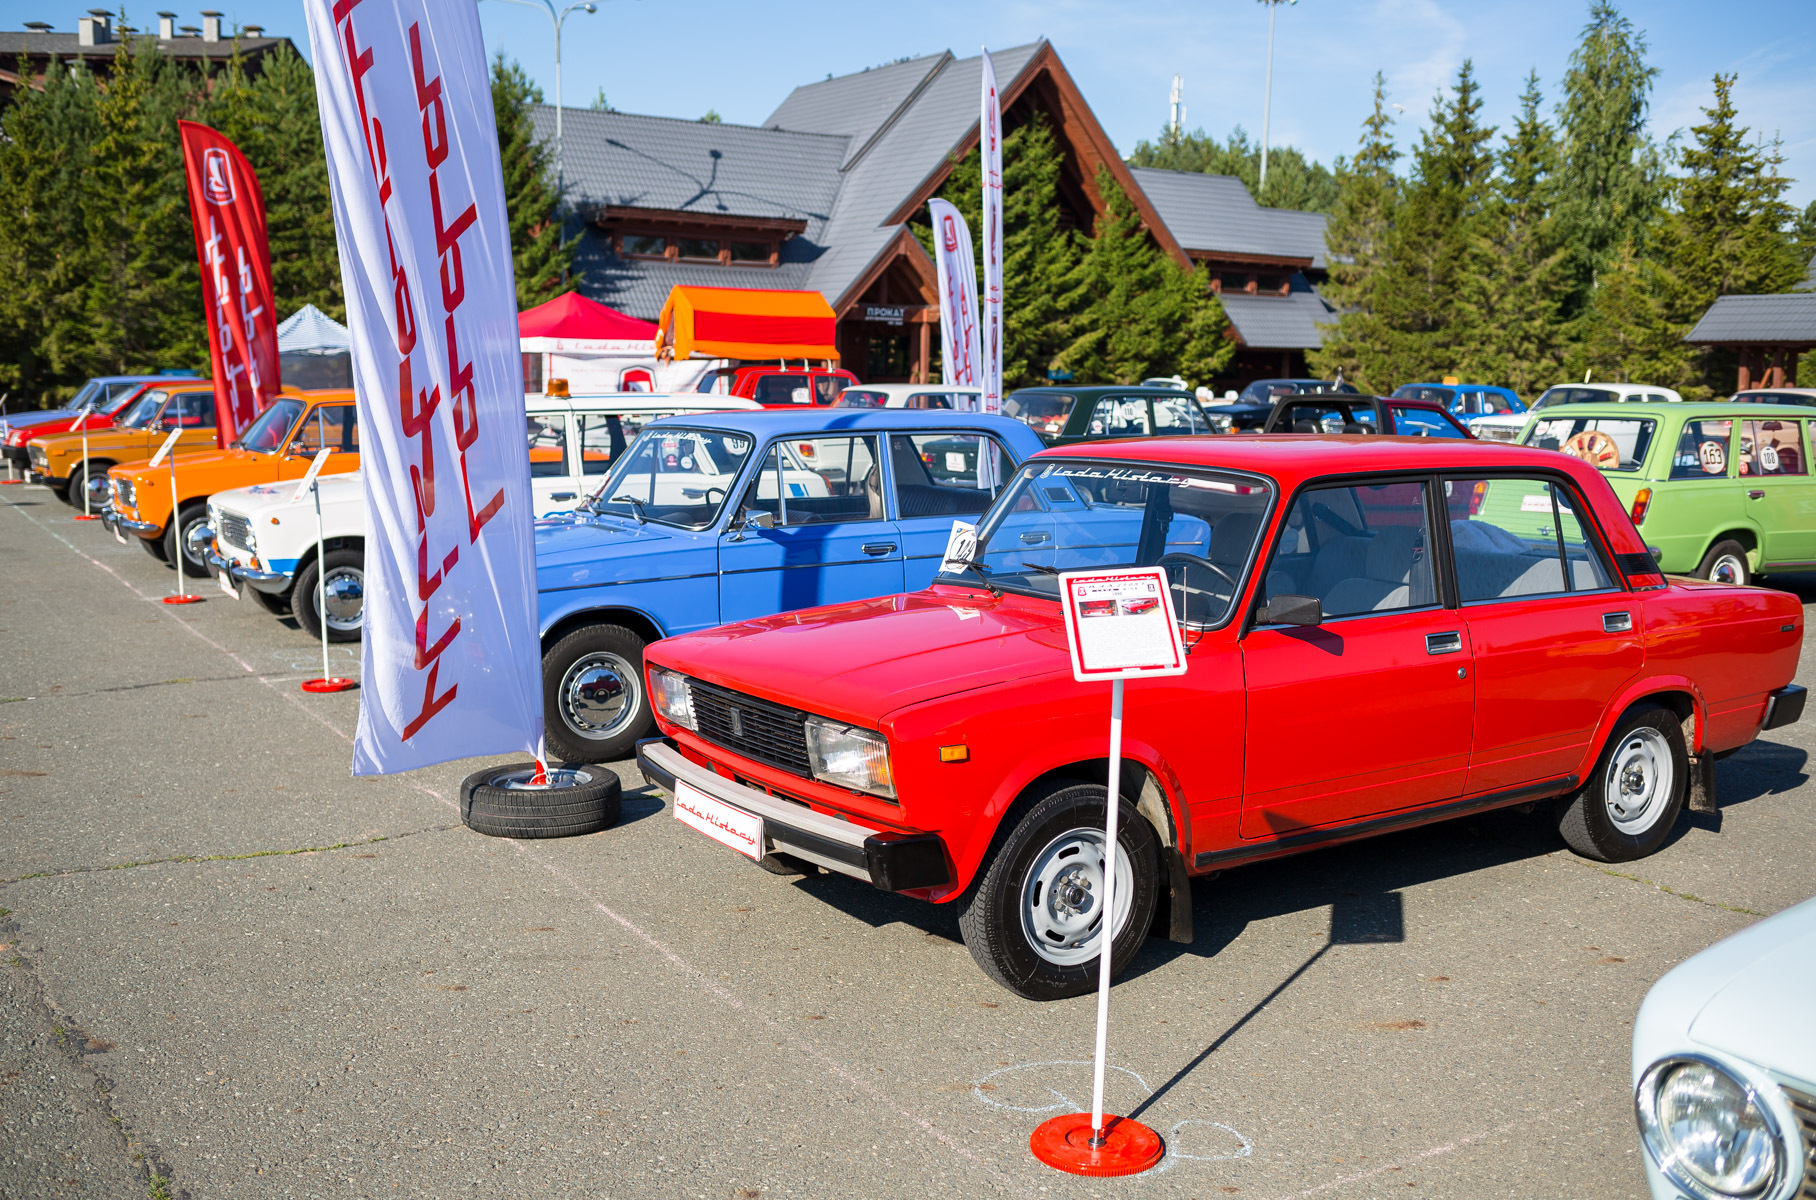 Аутентичные модели АвтоВАЗа от тольяттинского клуба Lada History